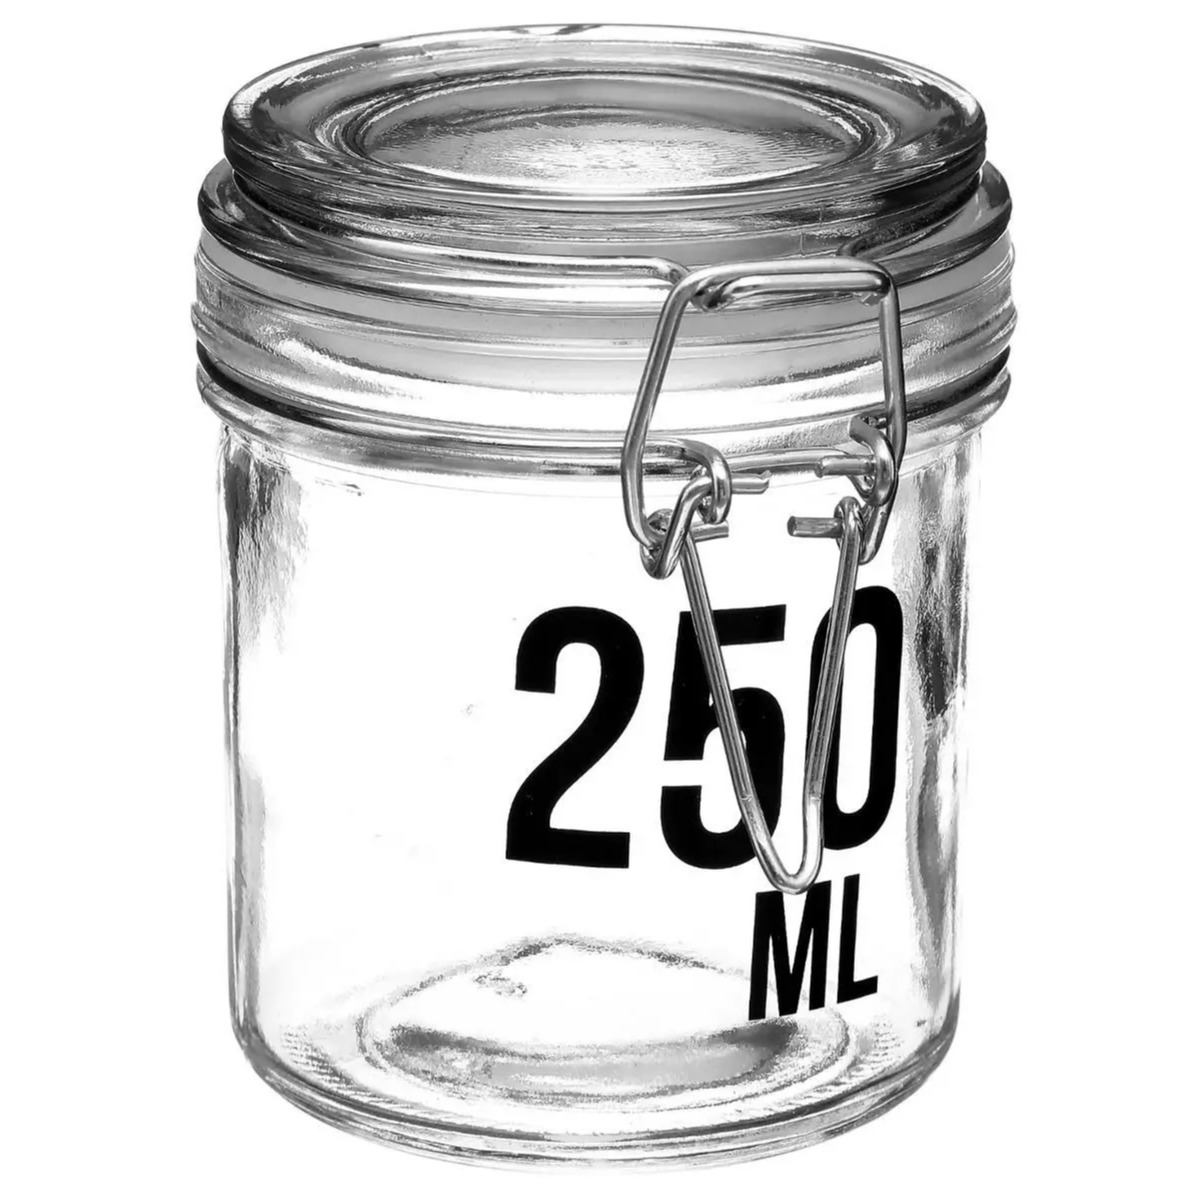 Inmaakpot-voorraadpot 0,25L glas met beugelsluiting